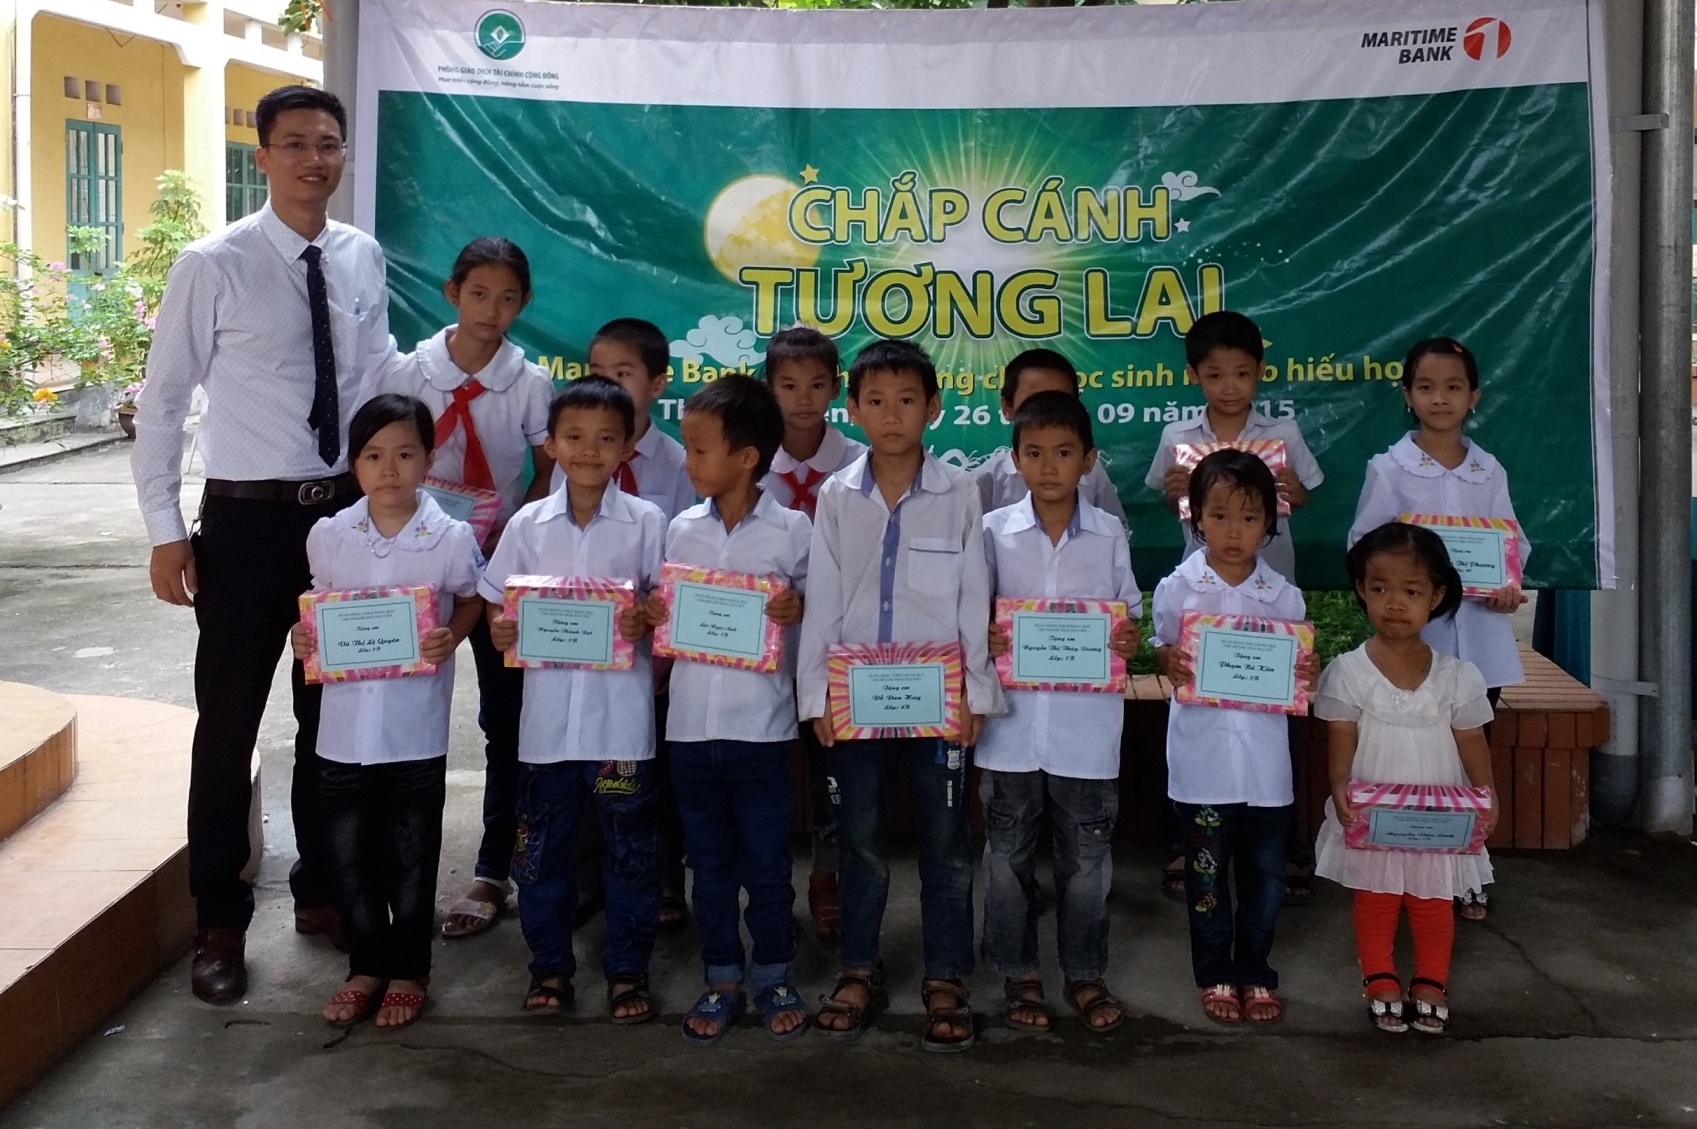 Maritime Bank trao học bổng cho các học sinh nghèo hiếu học dịp Tết Trung thu  2015 tại Trường tiểu học Túc Duyên, TP Thái Nguyên